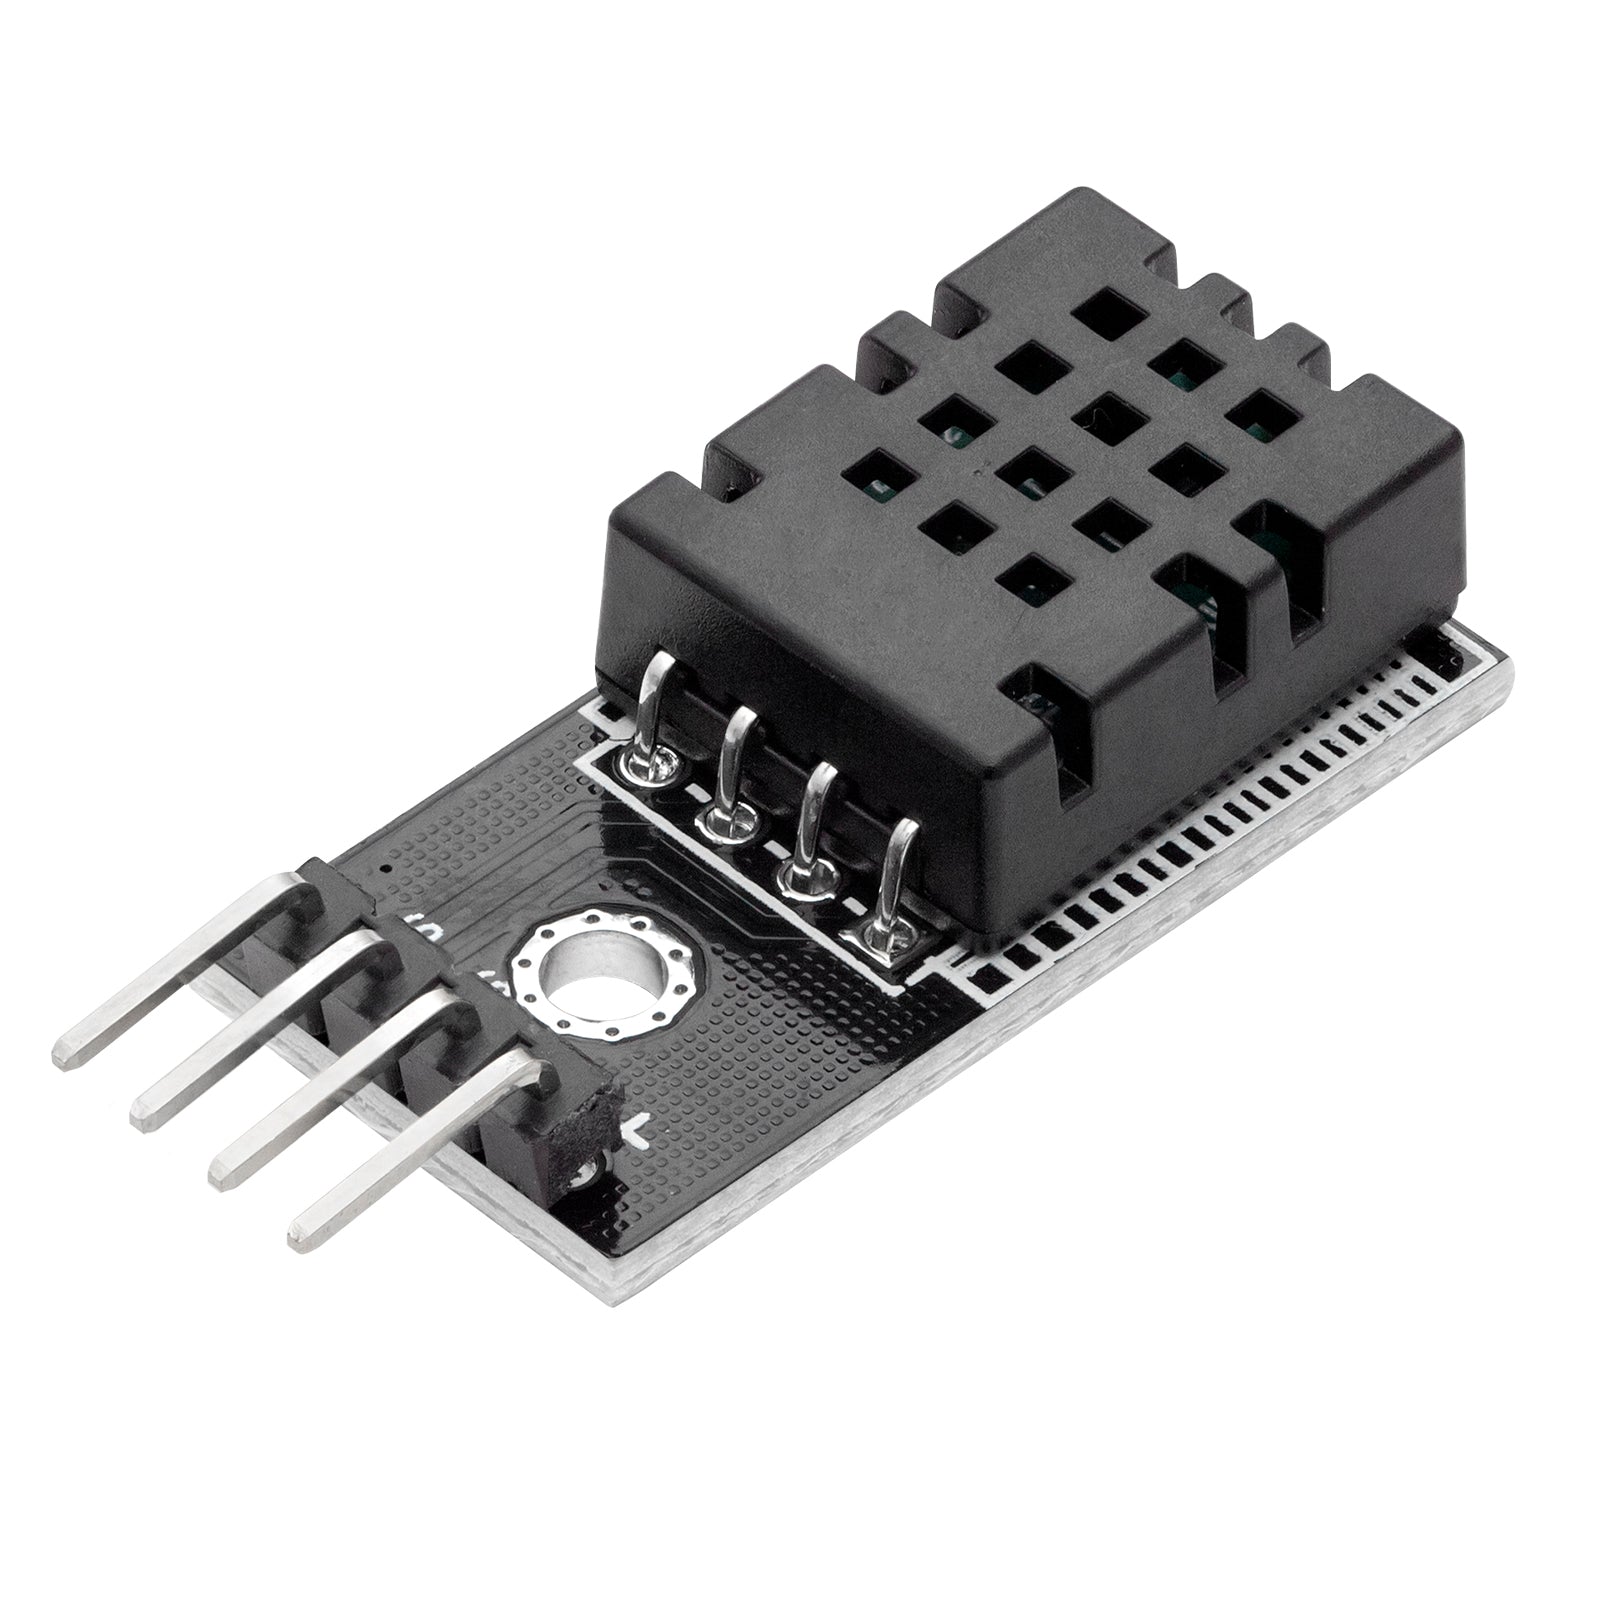 DHT20 Digitaler Temperatursensor und Luftfeuchtigkeitssensor mit I2C Schnittstelle 2.5V bis 5.5V kompatibel mit Raspberry Pi Board für DIY Mikroelektronik-Projekte - AZ-Delivery